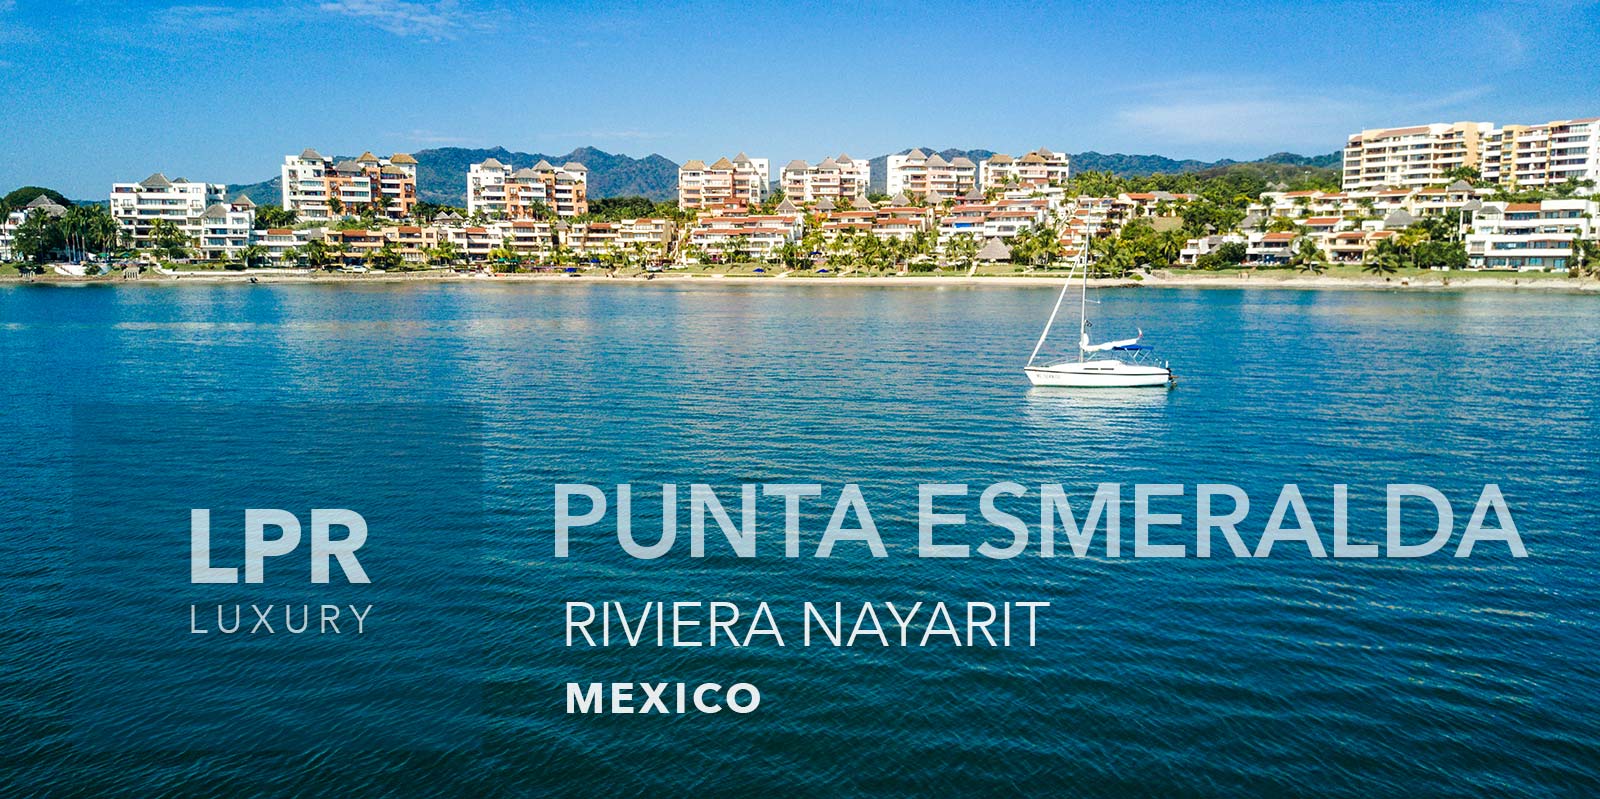 Punta Esmeralda - Punta de Mita Luxury beachfront vacation rental villas for sale in La Cruz de Huanacaxtle, Punta de Mita, Riviera Nayarit, North shore Puerto Vallarta, Mexico